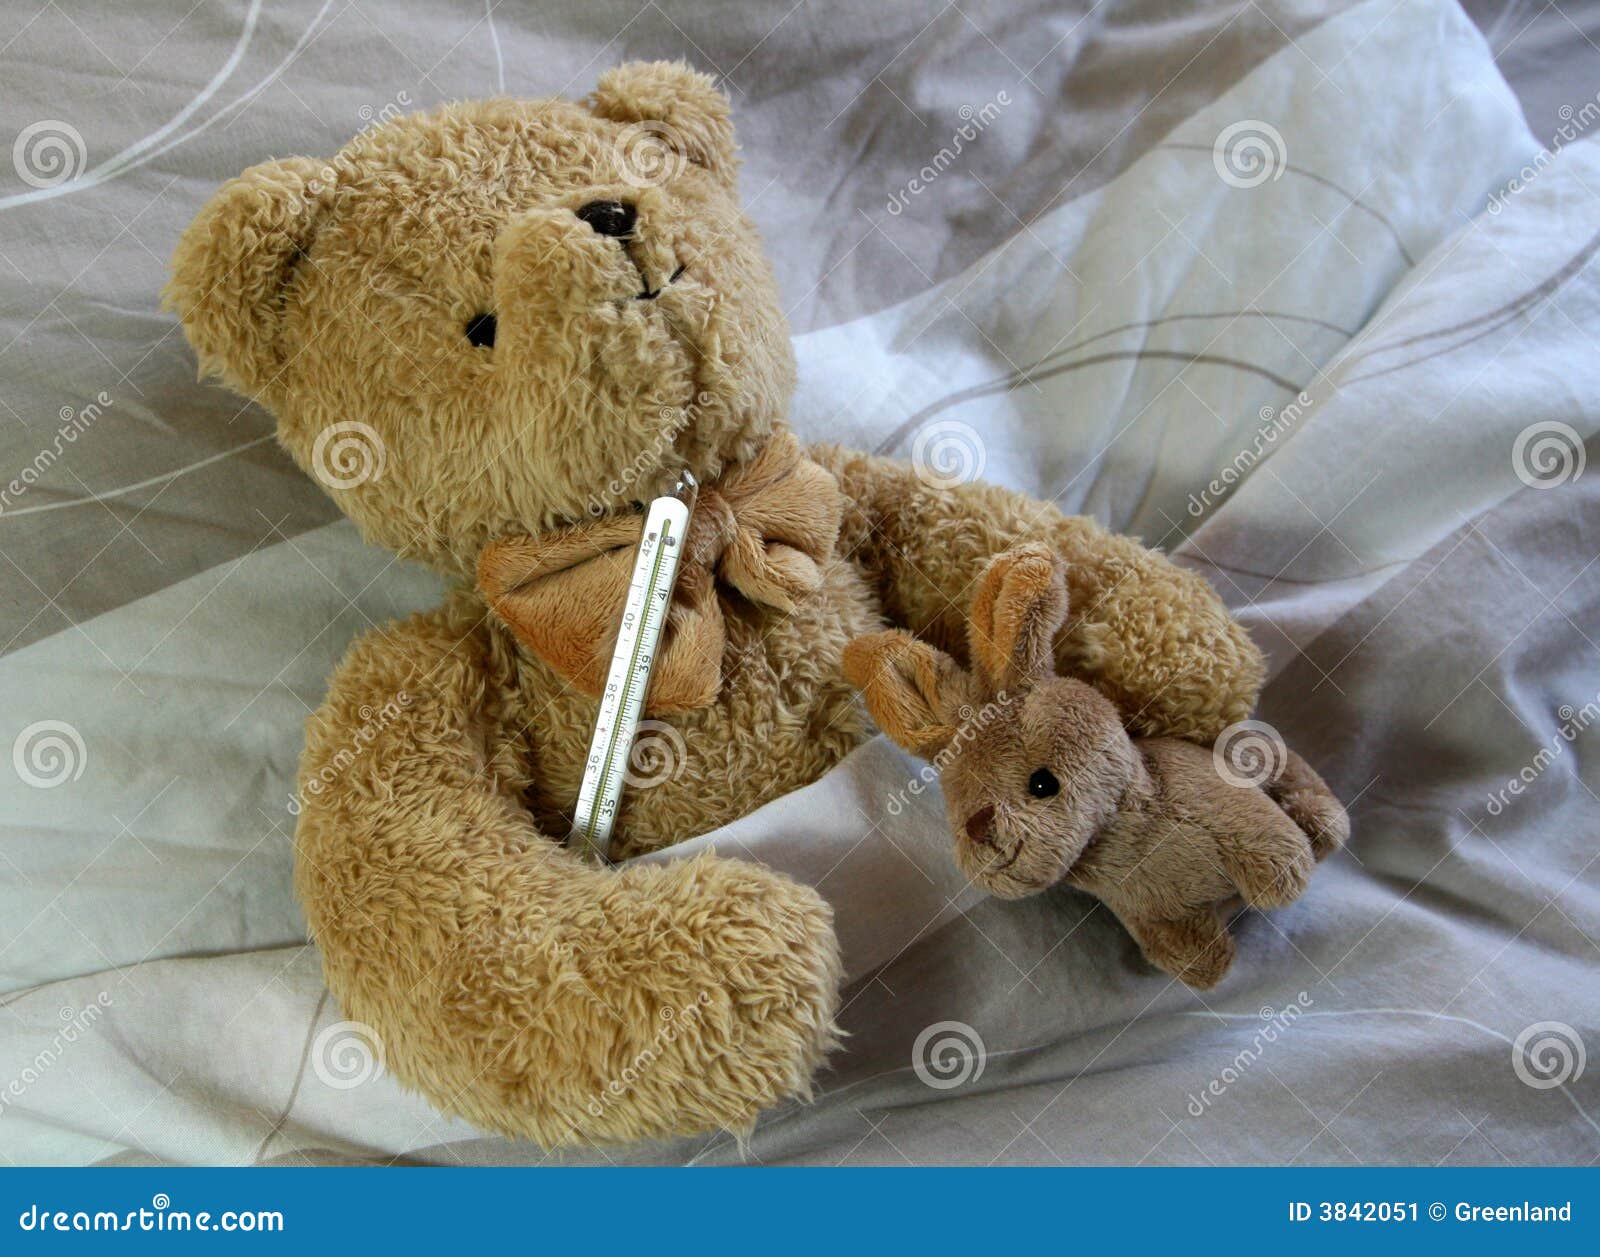 Игрушки заболели. Медвежонок болеет. Мишка Тедди болеет. Мишка Тедди заболел. Плюшевый Медвежонок заболел.